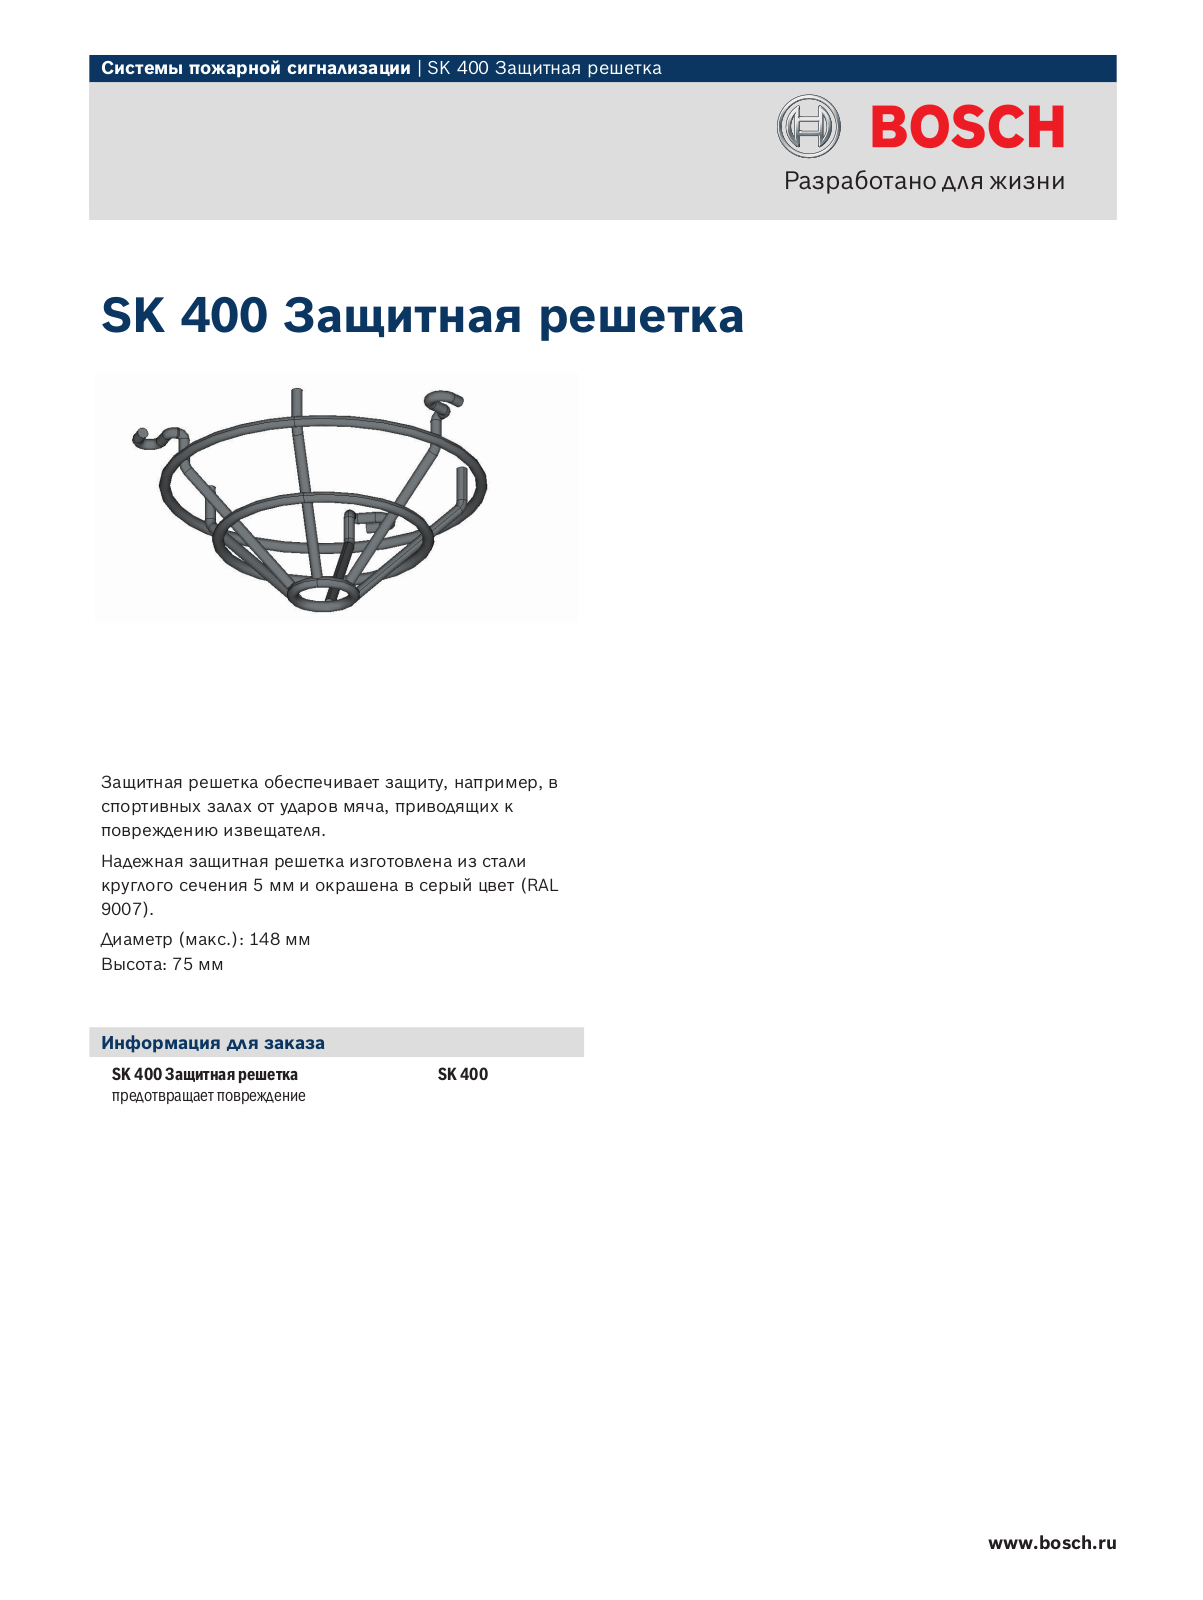 BOSCH SK 400 User Manual